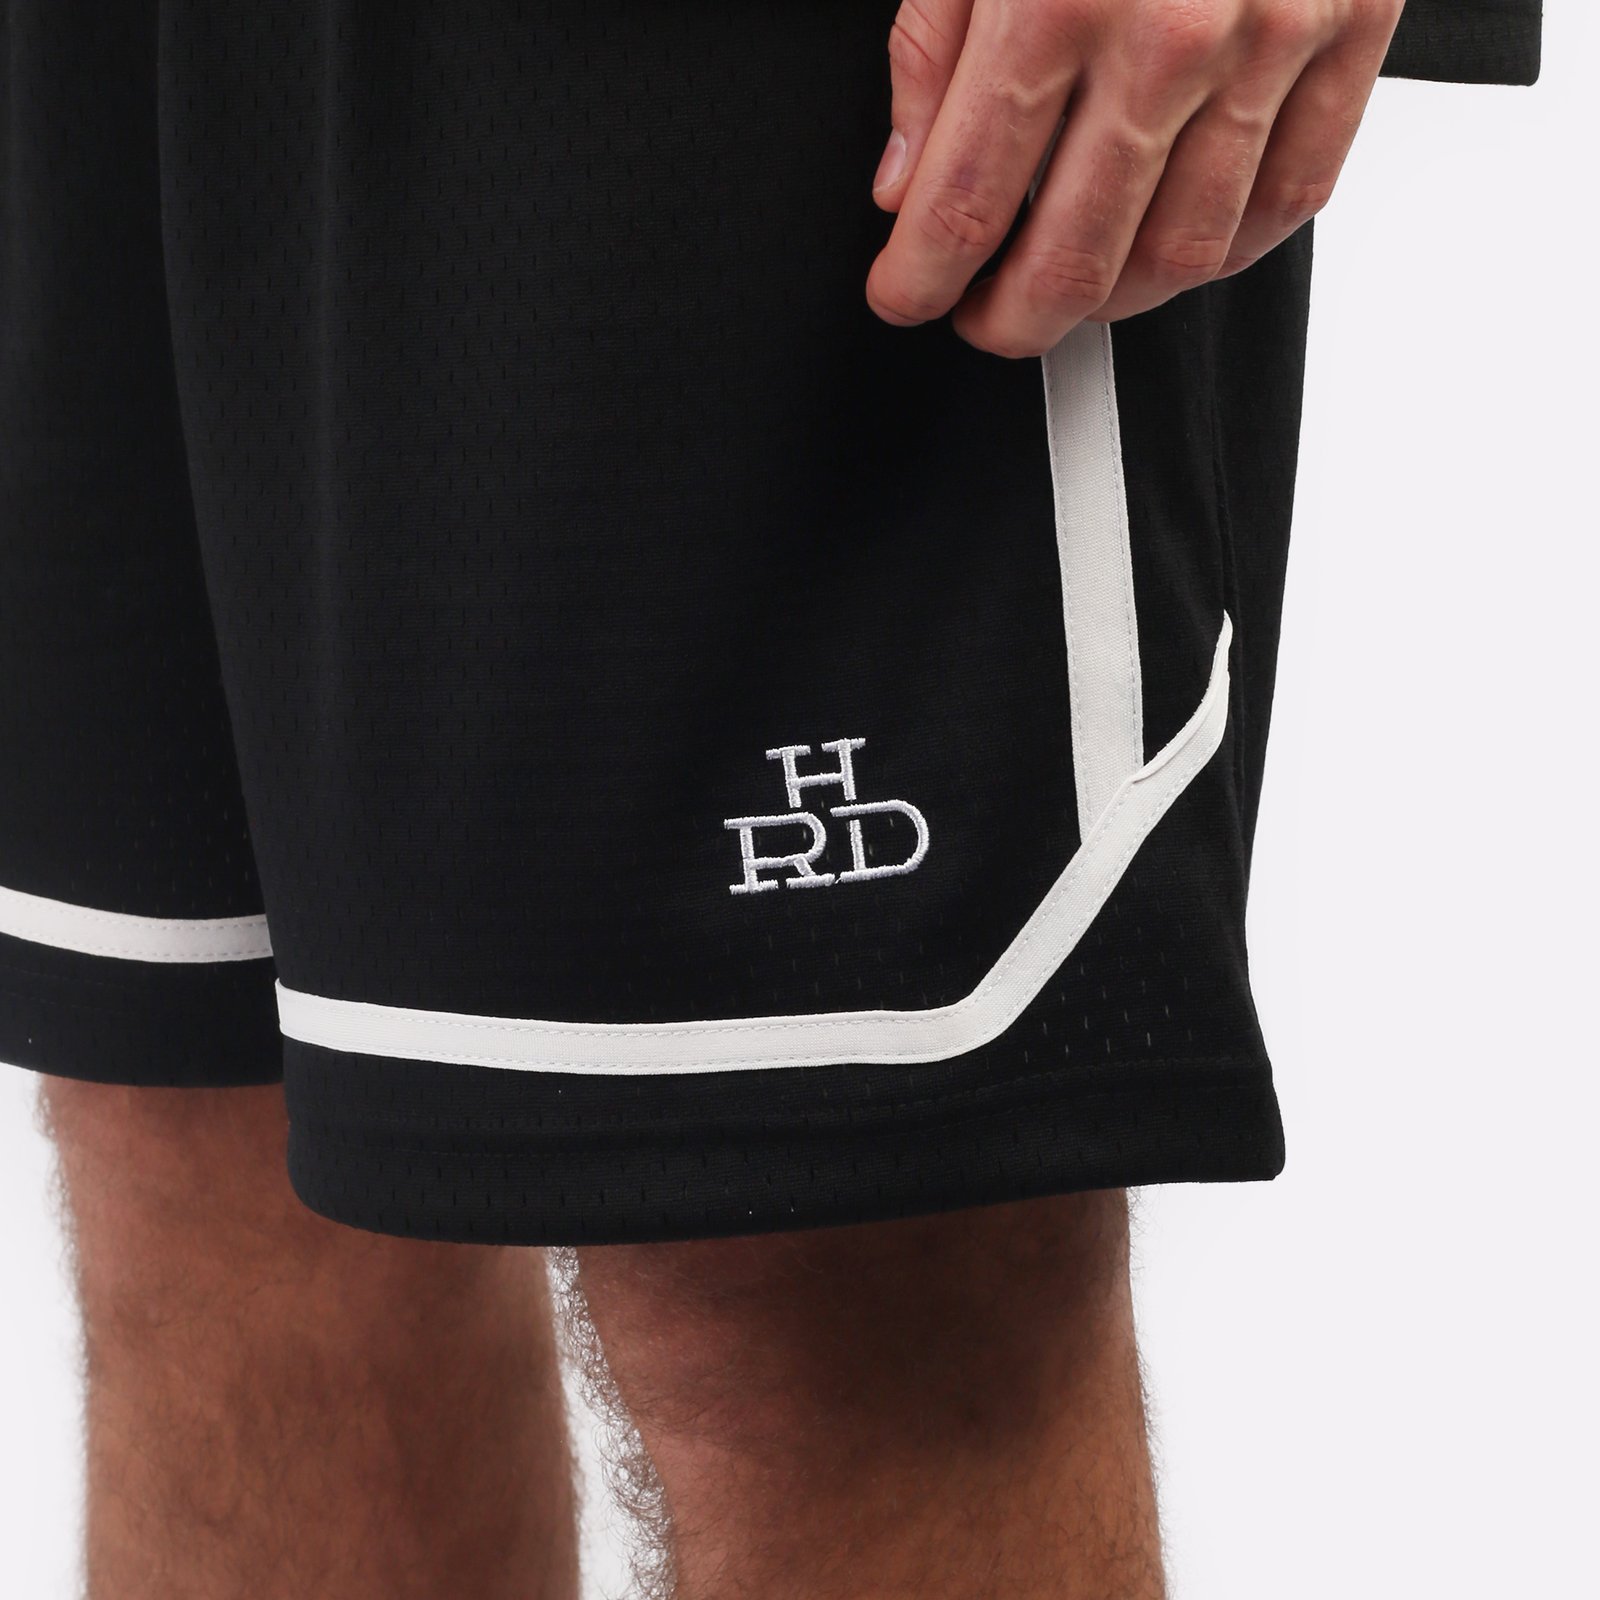 мужские черные шорты Hard Teammate Teammate short-blk/wht - цена, описание, фото 3